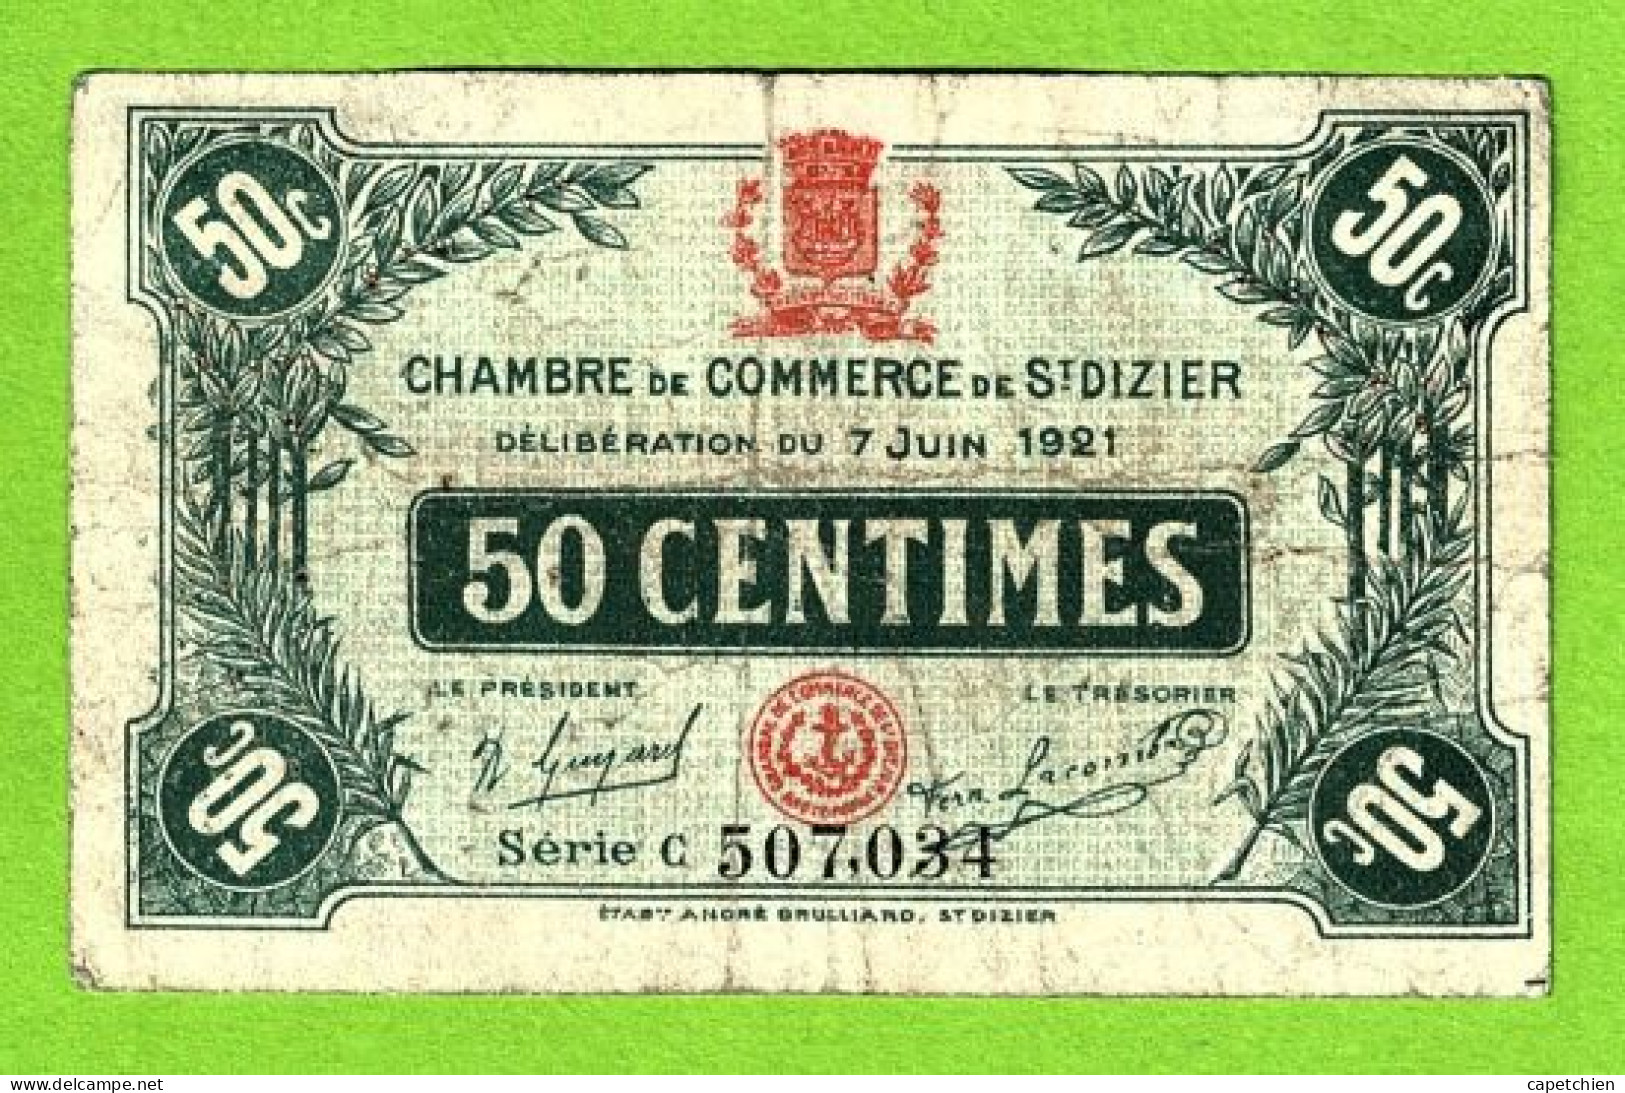 FRANCE / CHAMBRE De COMMERCE De SAINT DIZIER / 50 CENT./ 7 JUIN 1921 / N° 507,034 / SERIE C - Chamber Of Commerce